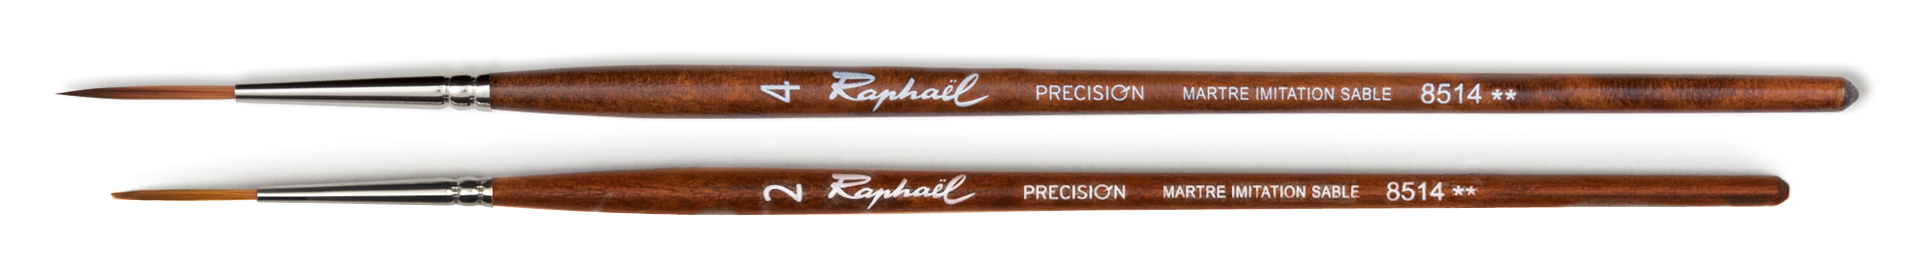 Raphael Aquarellpinsel Precision 8514